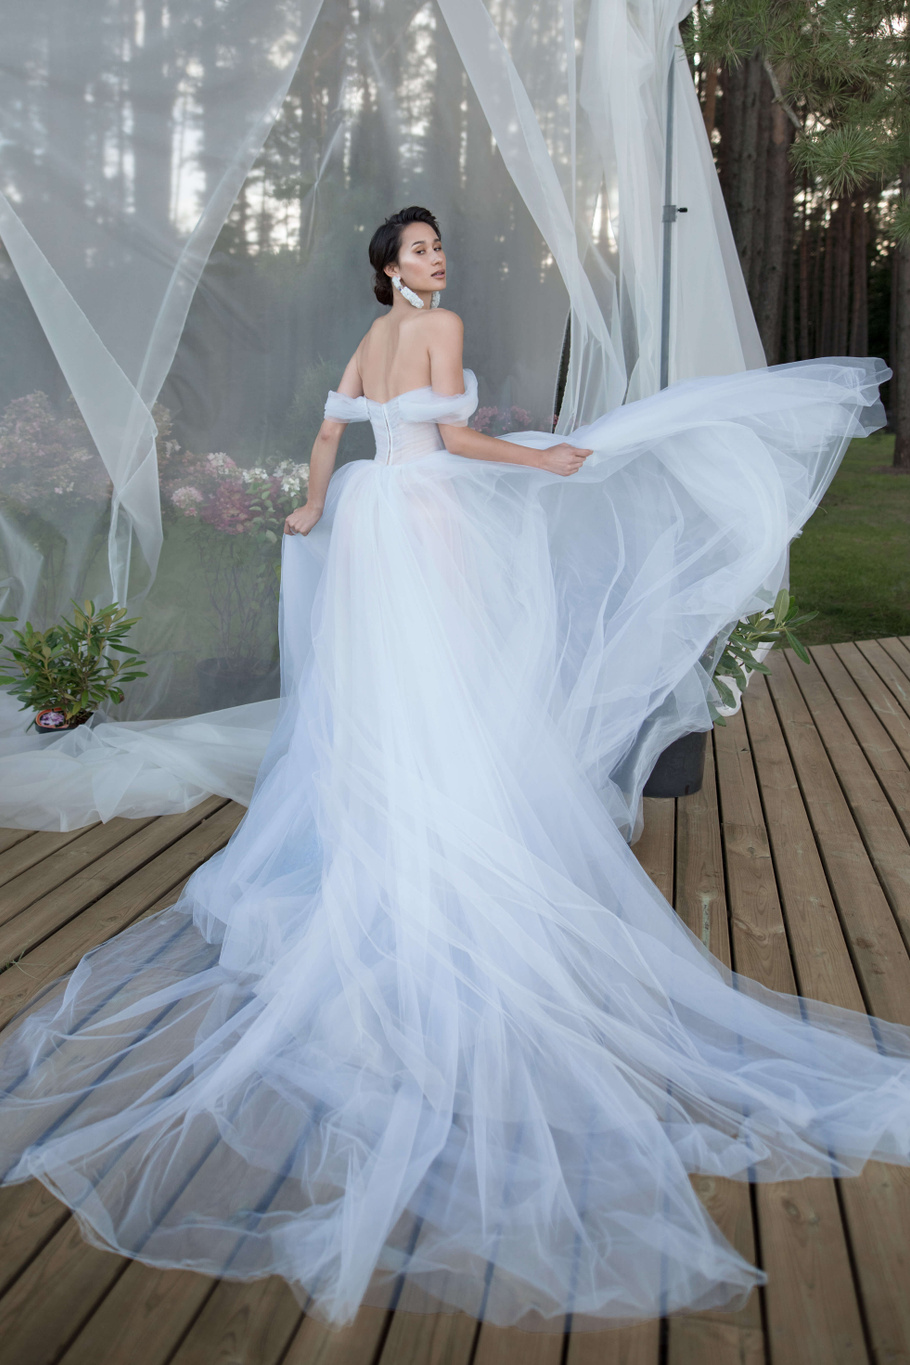 Купить свадебное платье «Оливер» Бламмо Биамо из коллекции Нимфа 2020 года в Санкт-Петербурге